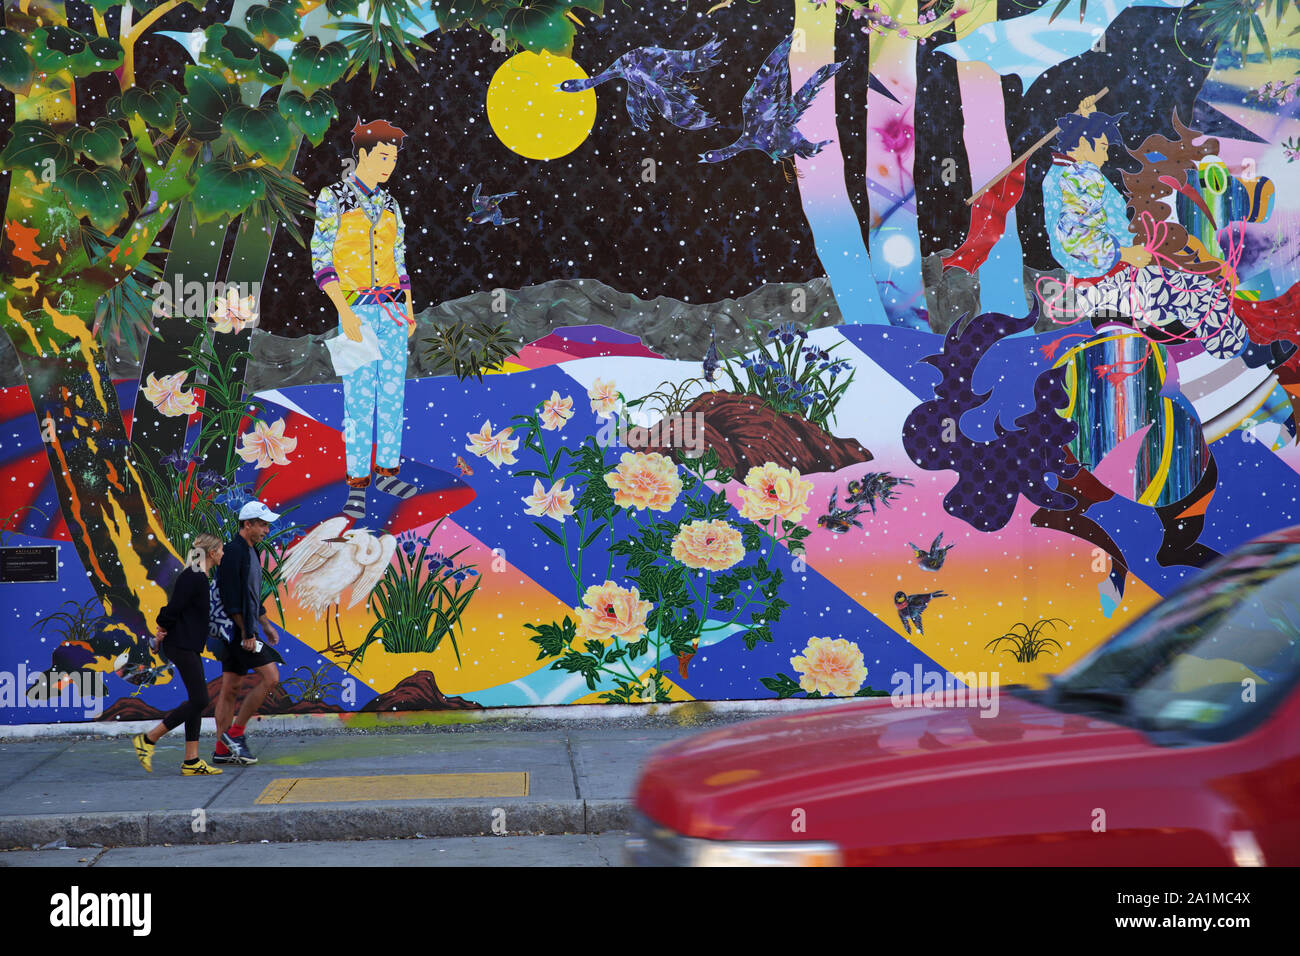 New York, NY USA - 27 septembre 2019 : Vue de la fine art peinture de Tomokazu Matsuyama sur la paroi murale Bowery au coin de Houston Street un Banque D'Images